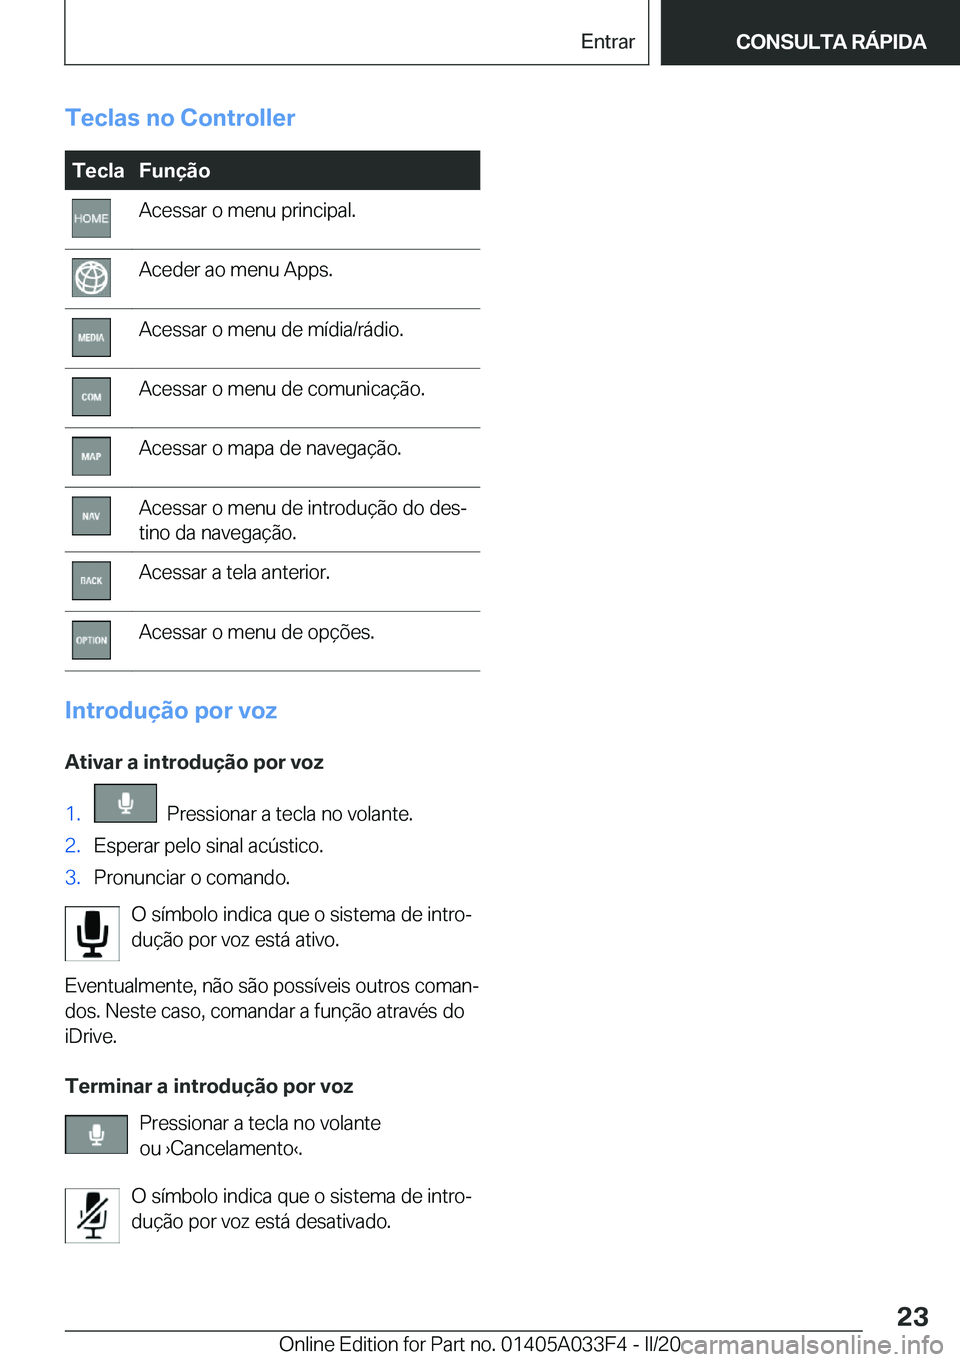 BMW X5 M 2020  Manual do condutor (in Portuguese) �T�e�c�l�a�s��n�o��C�o�n�t�r�o�l�l�e�r�T�e�c�l�a�F�u�n�